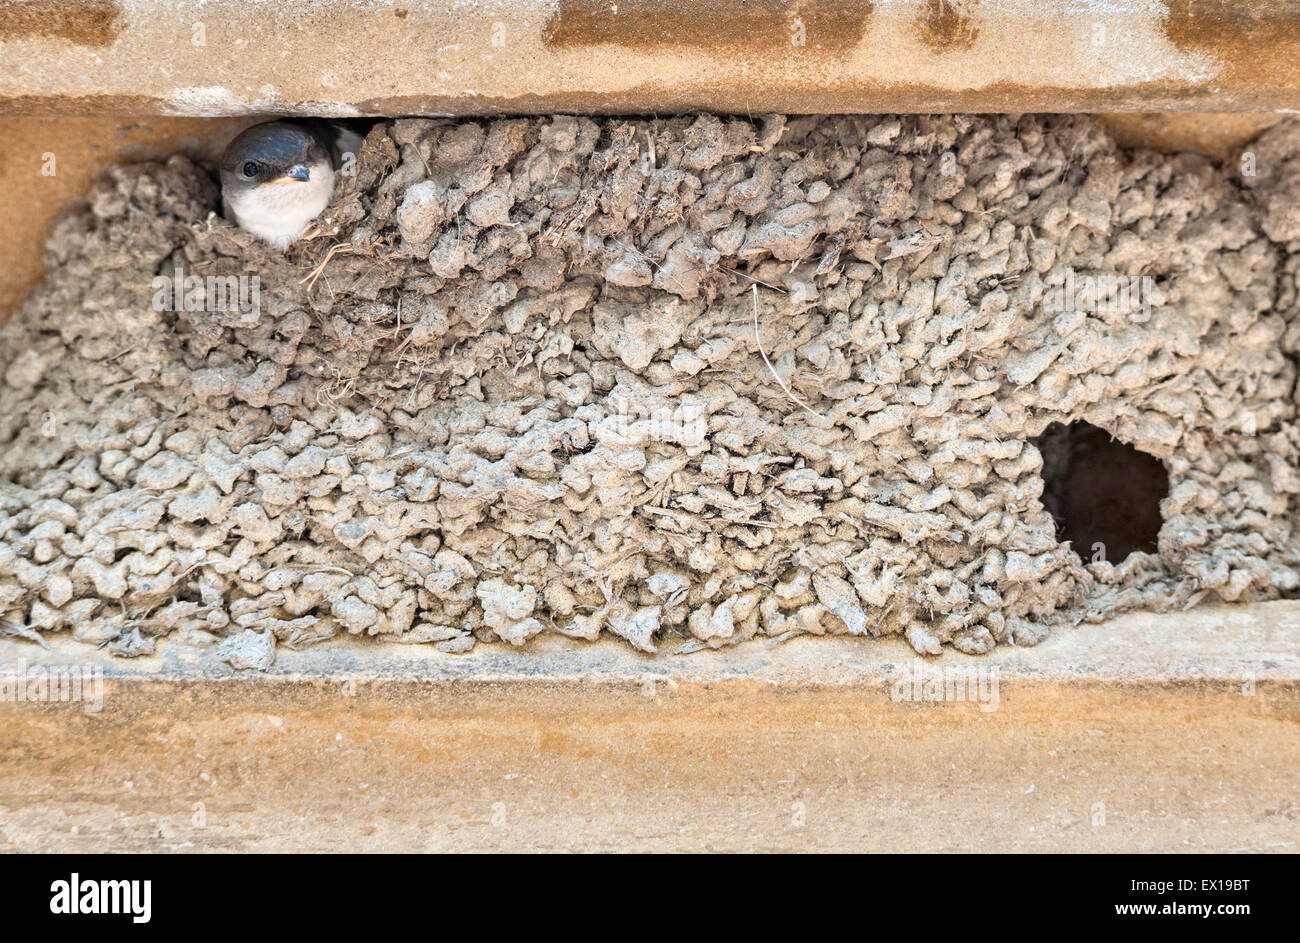 Ein junger schlucken peering aus dem Schlamm Nest in der Tür eines alten Gebäudes, Herefordshire, UK Stockfoto